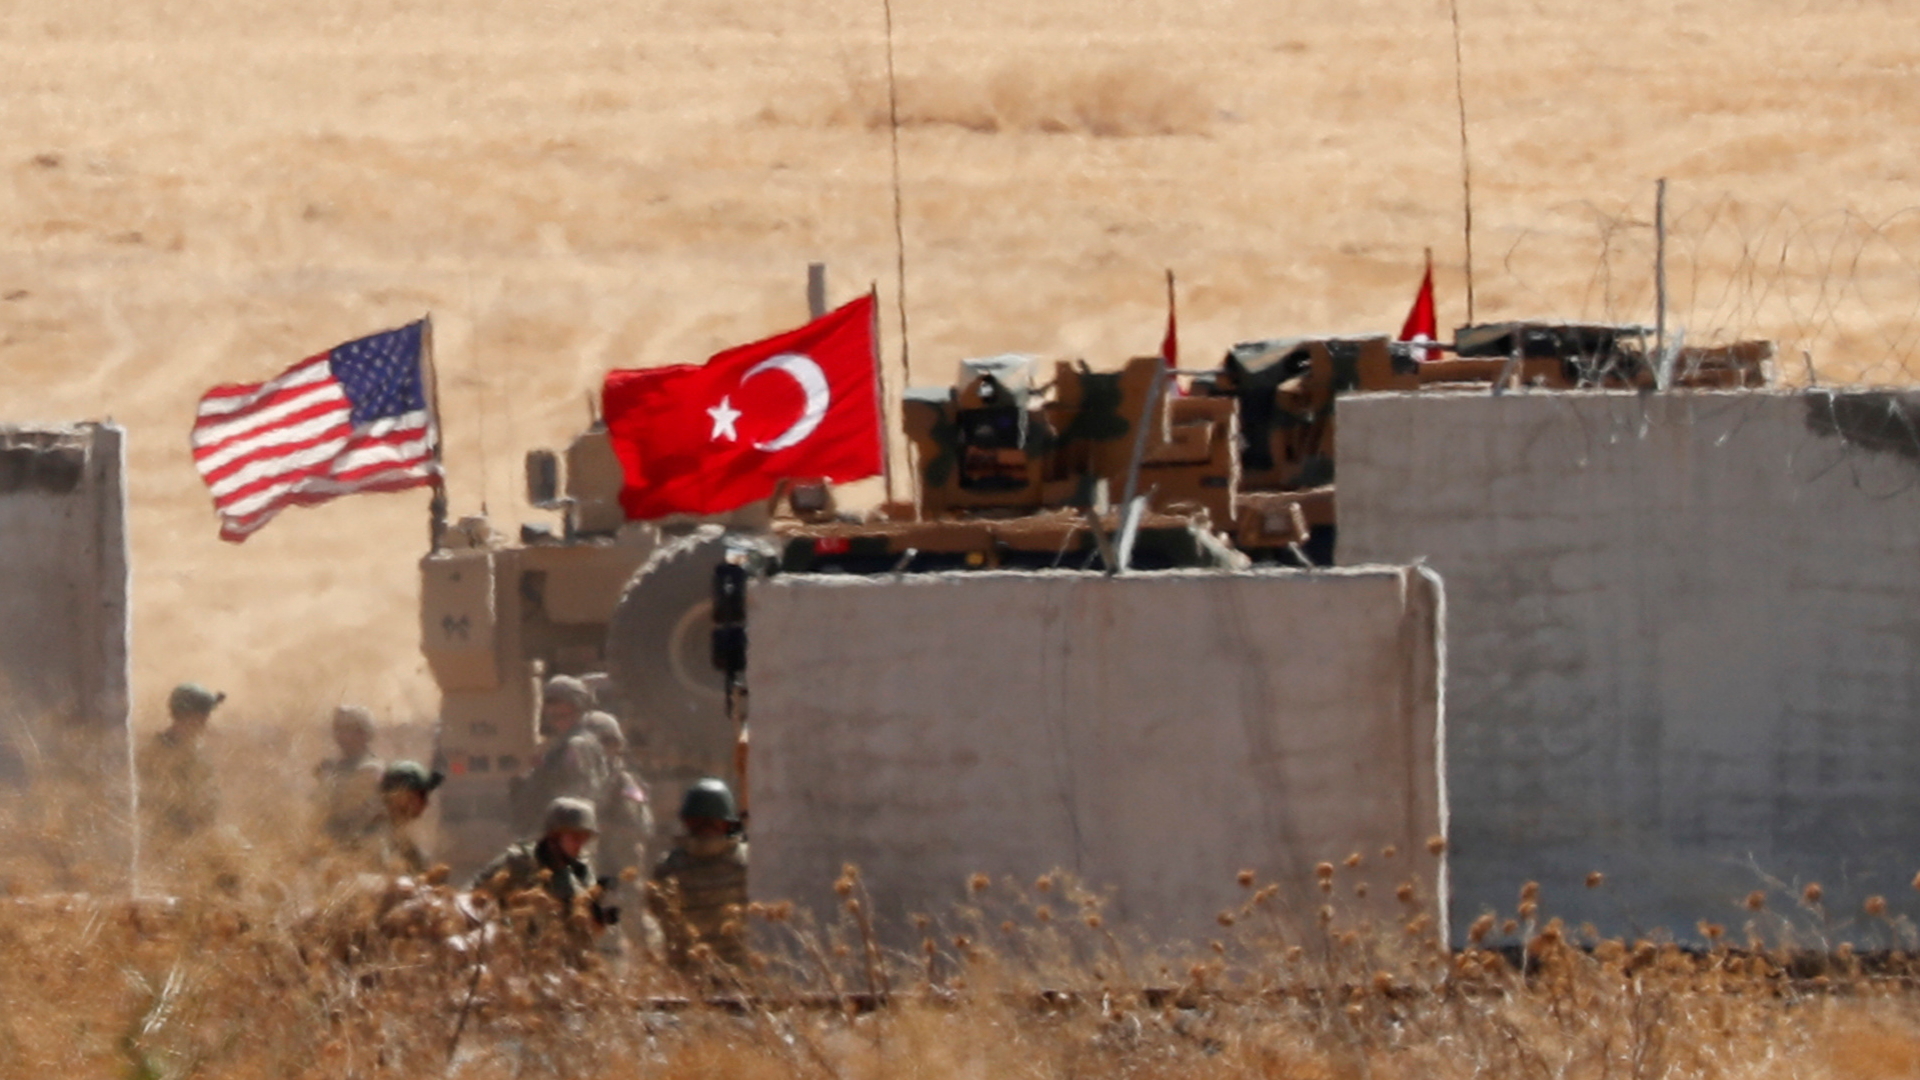 Archivbild von türkischen und US-Truppen bei einem gemeinsamen Einsatz in Syrien | REUTERS